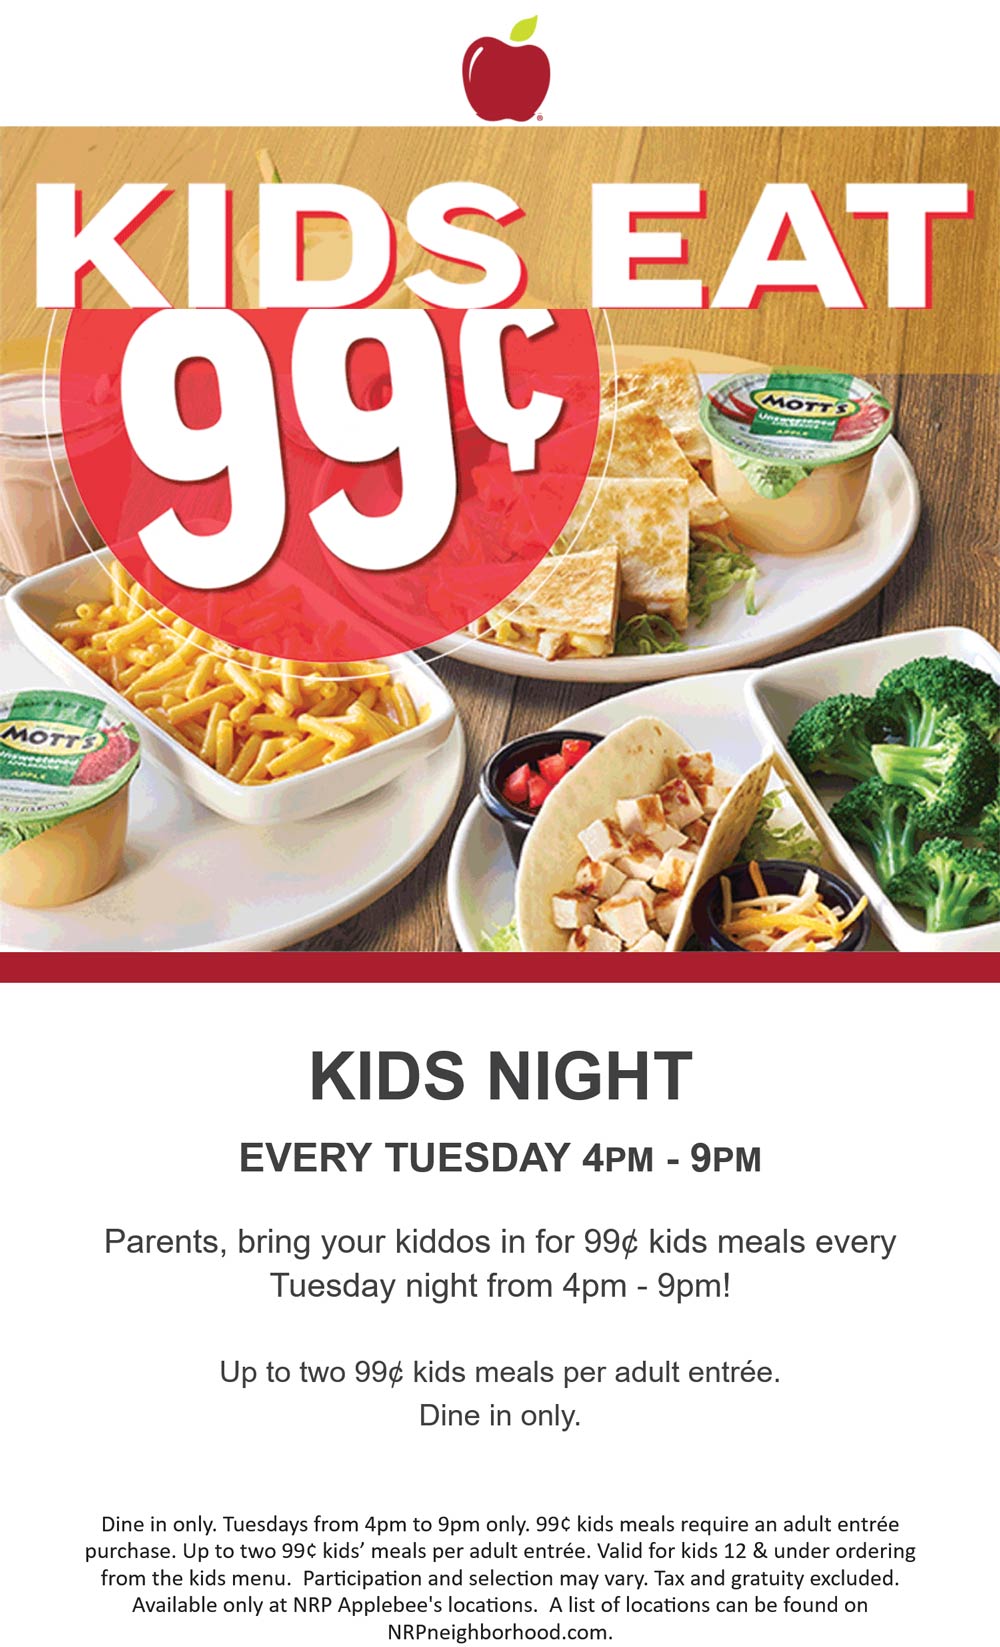 Applebees restaurants Coupon  $1 kids meals today 4-9p at Applebees restaurants #applebees 